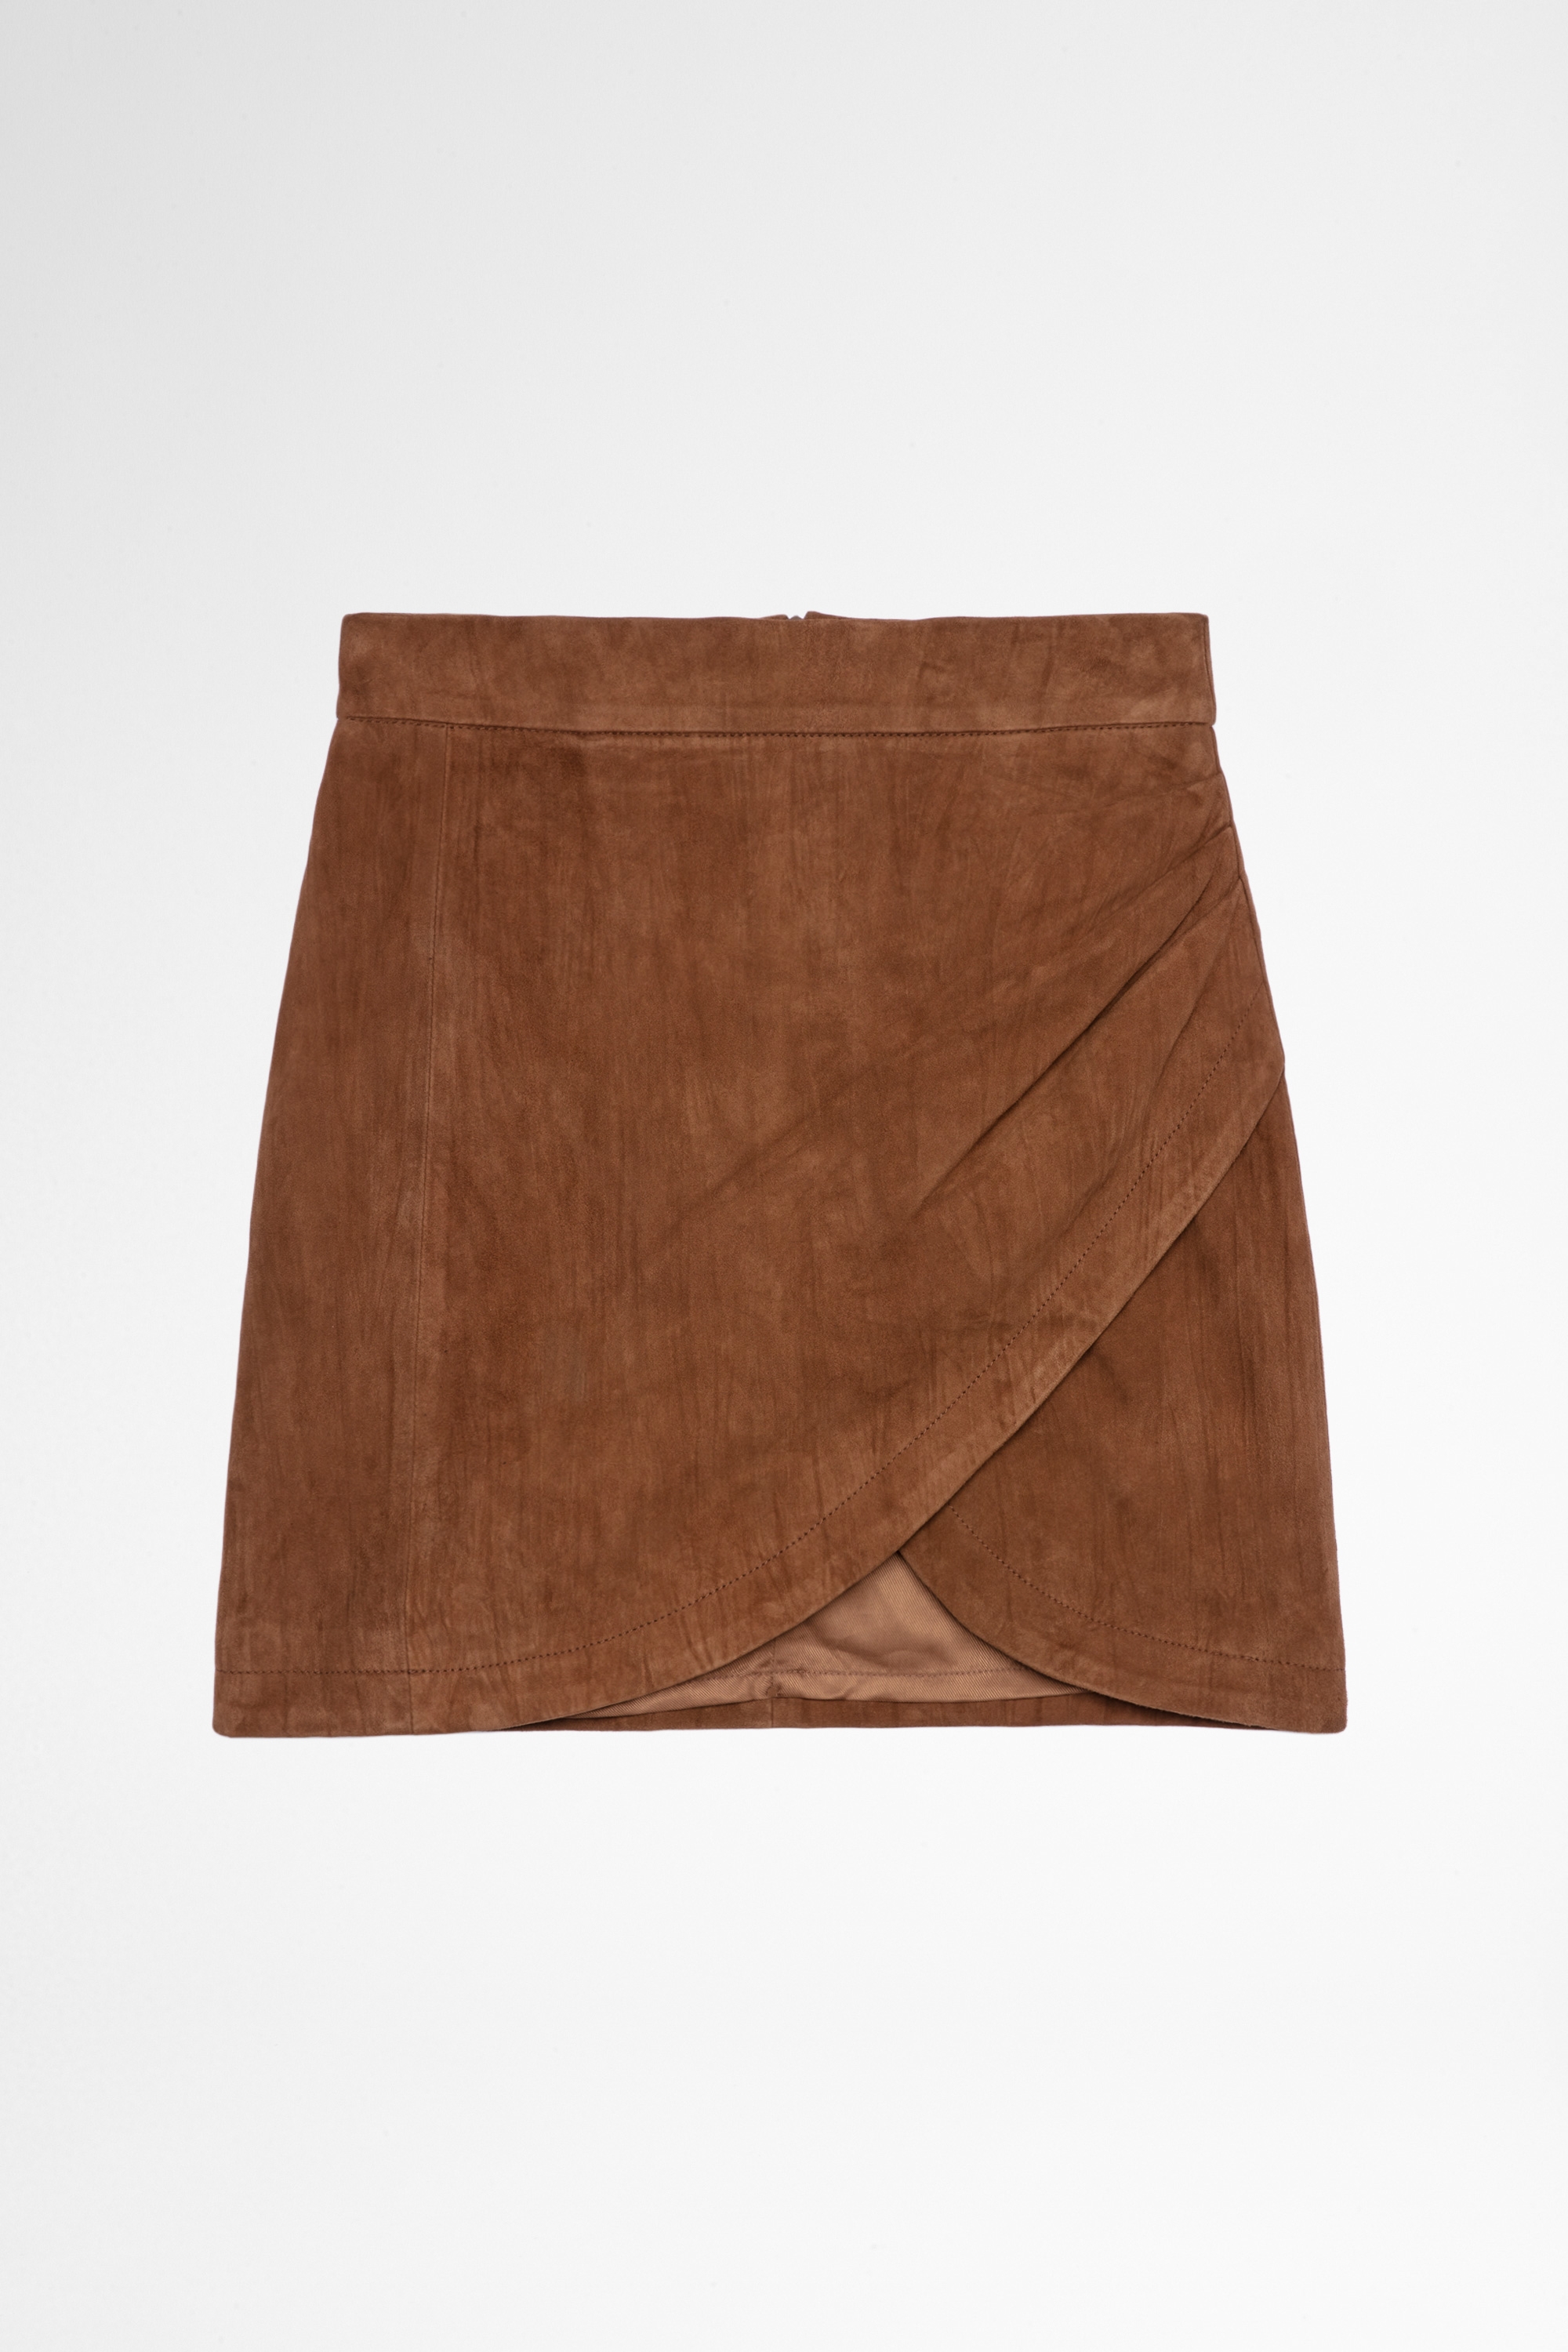 Julipe Leather Skirt